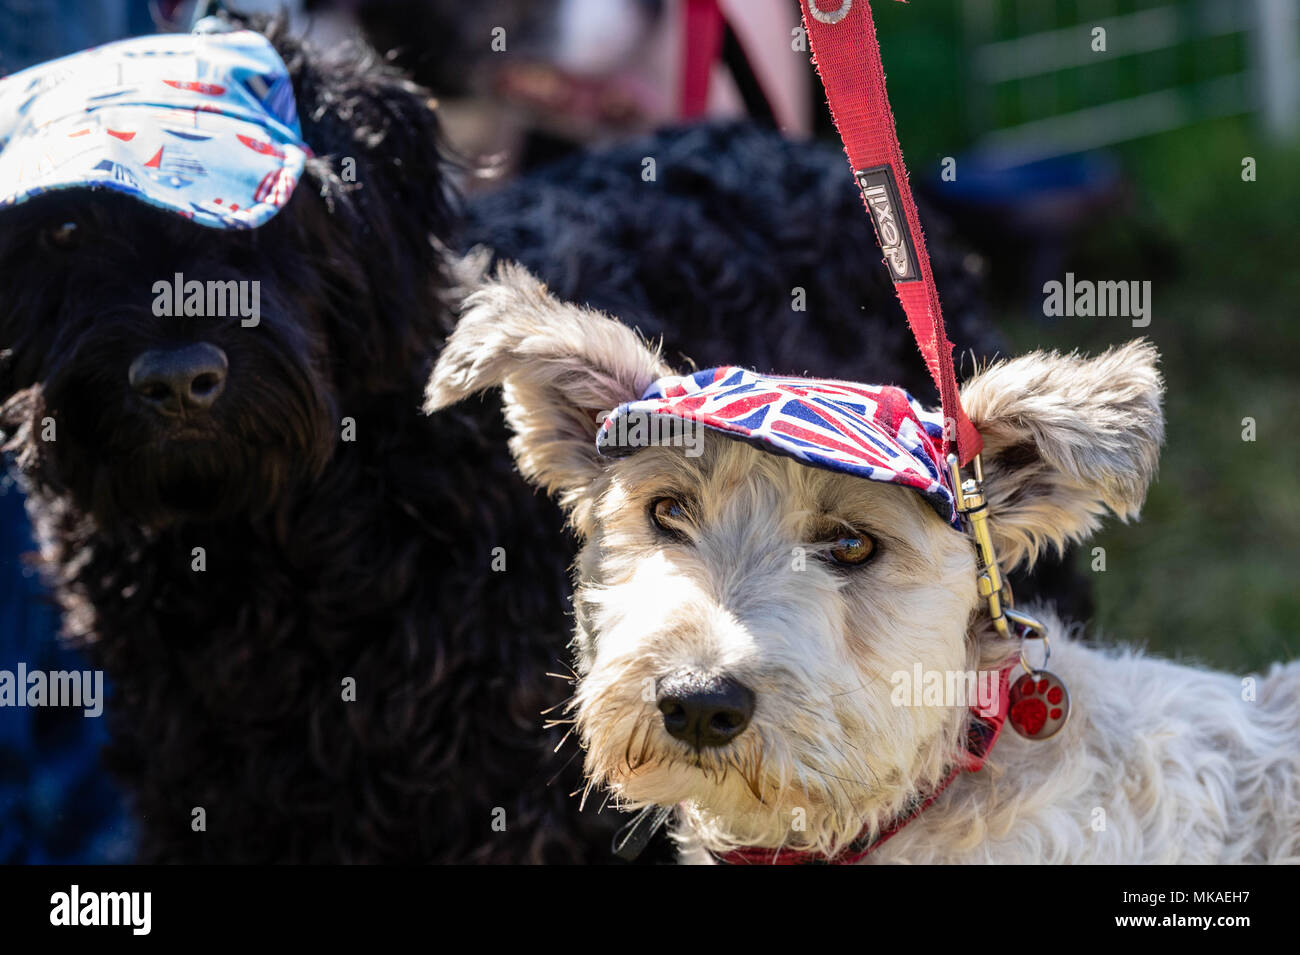 Moda per cani immagini e fotografie stock ad alta risoluzione - Alamy